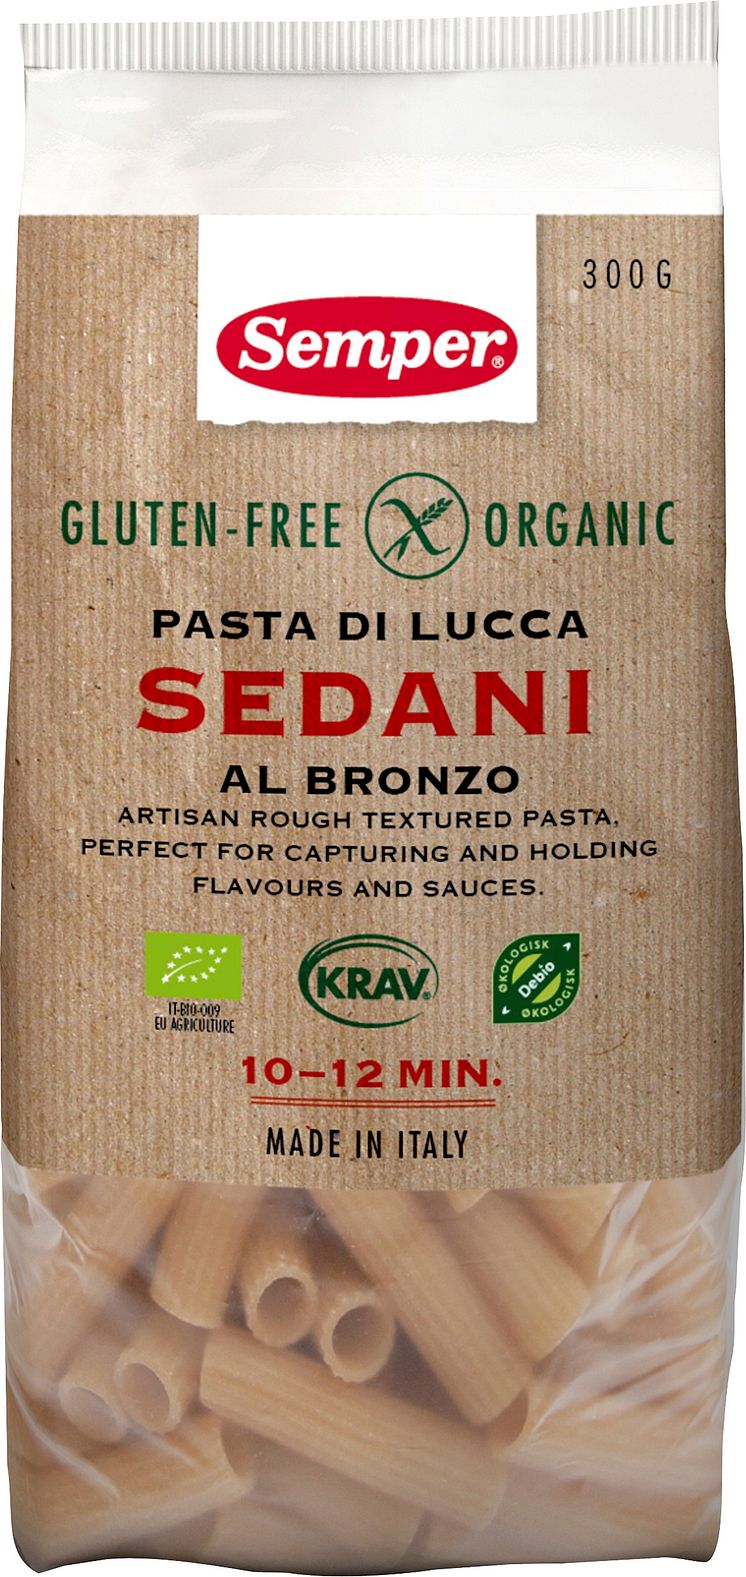 Sedani - glutenfri och ekologisk pasta